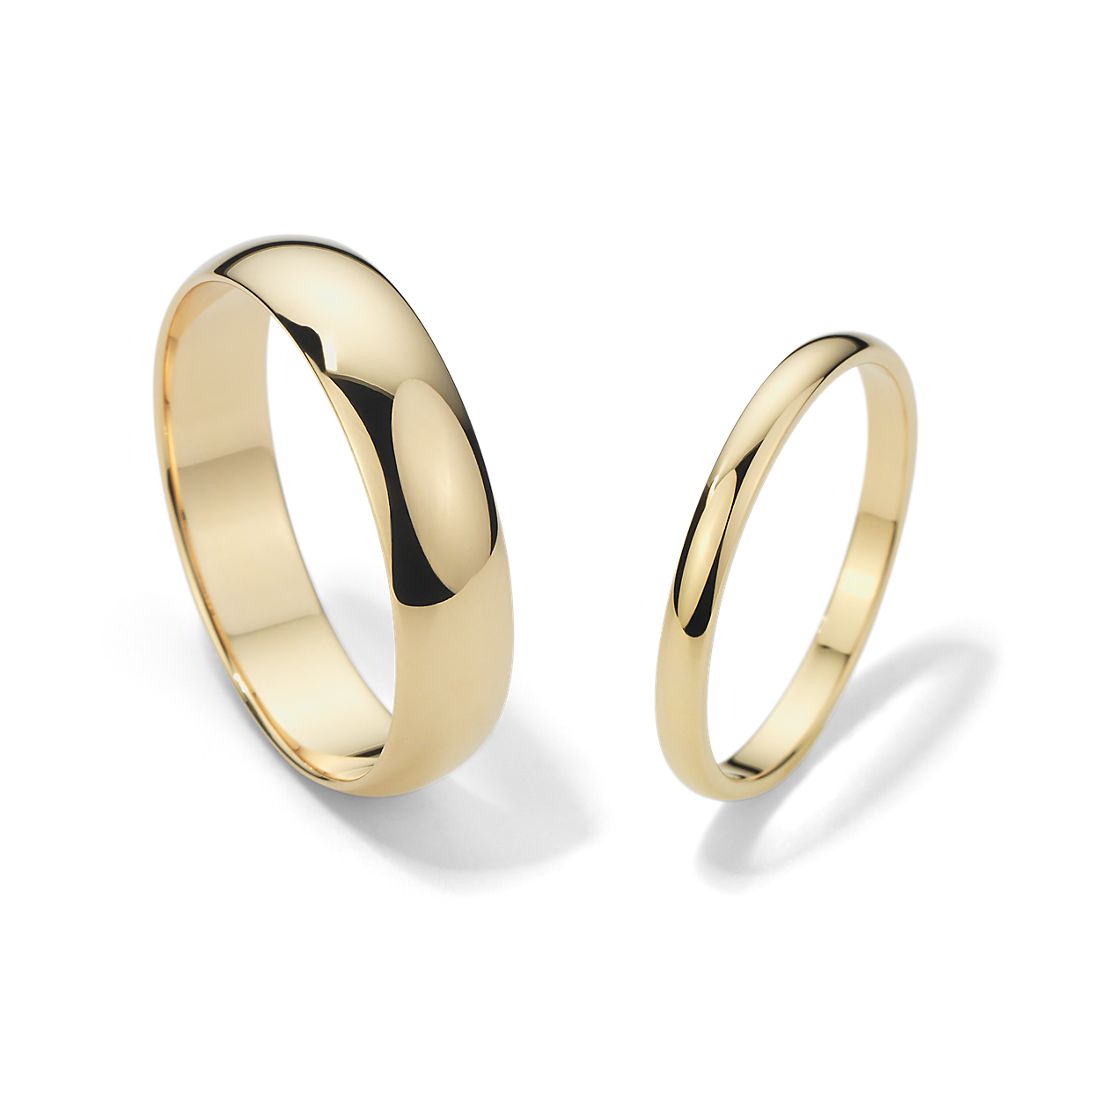 Dalset Hazlo pesado Ambiguo Conjunto de anillos de bodas clásicos en oro amarillo de 14 k | Blue Nile ES